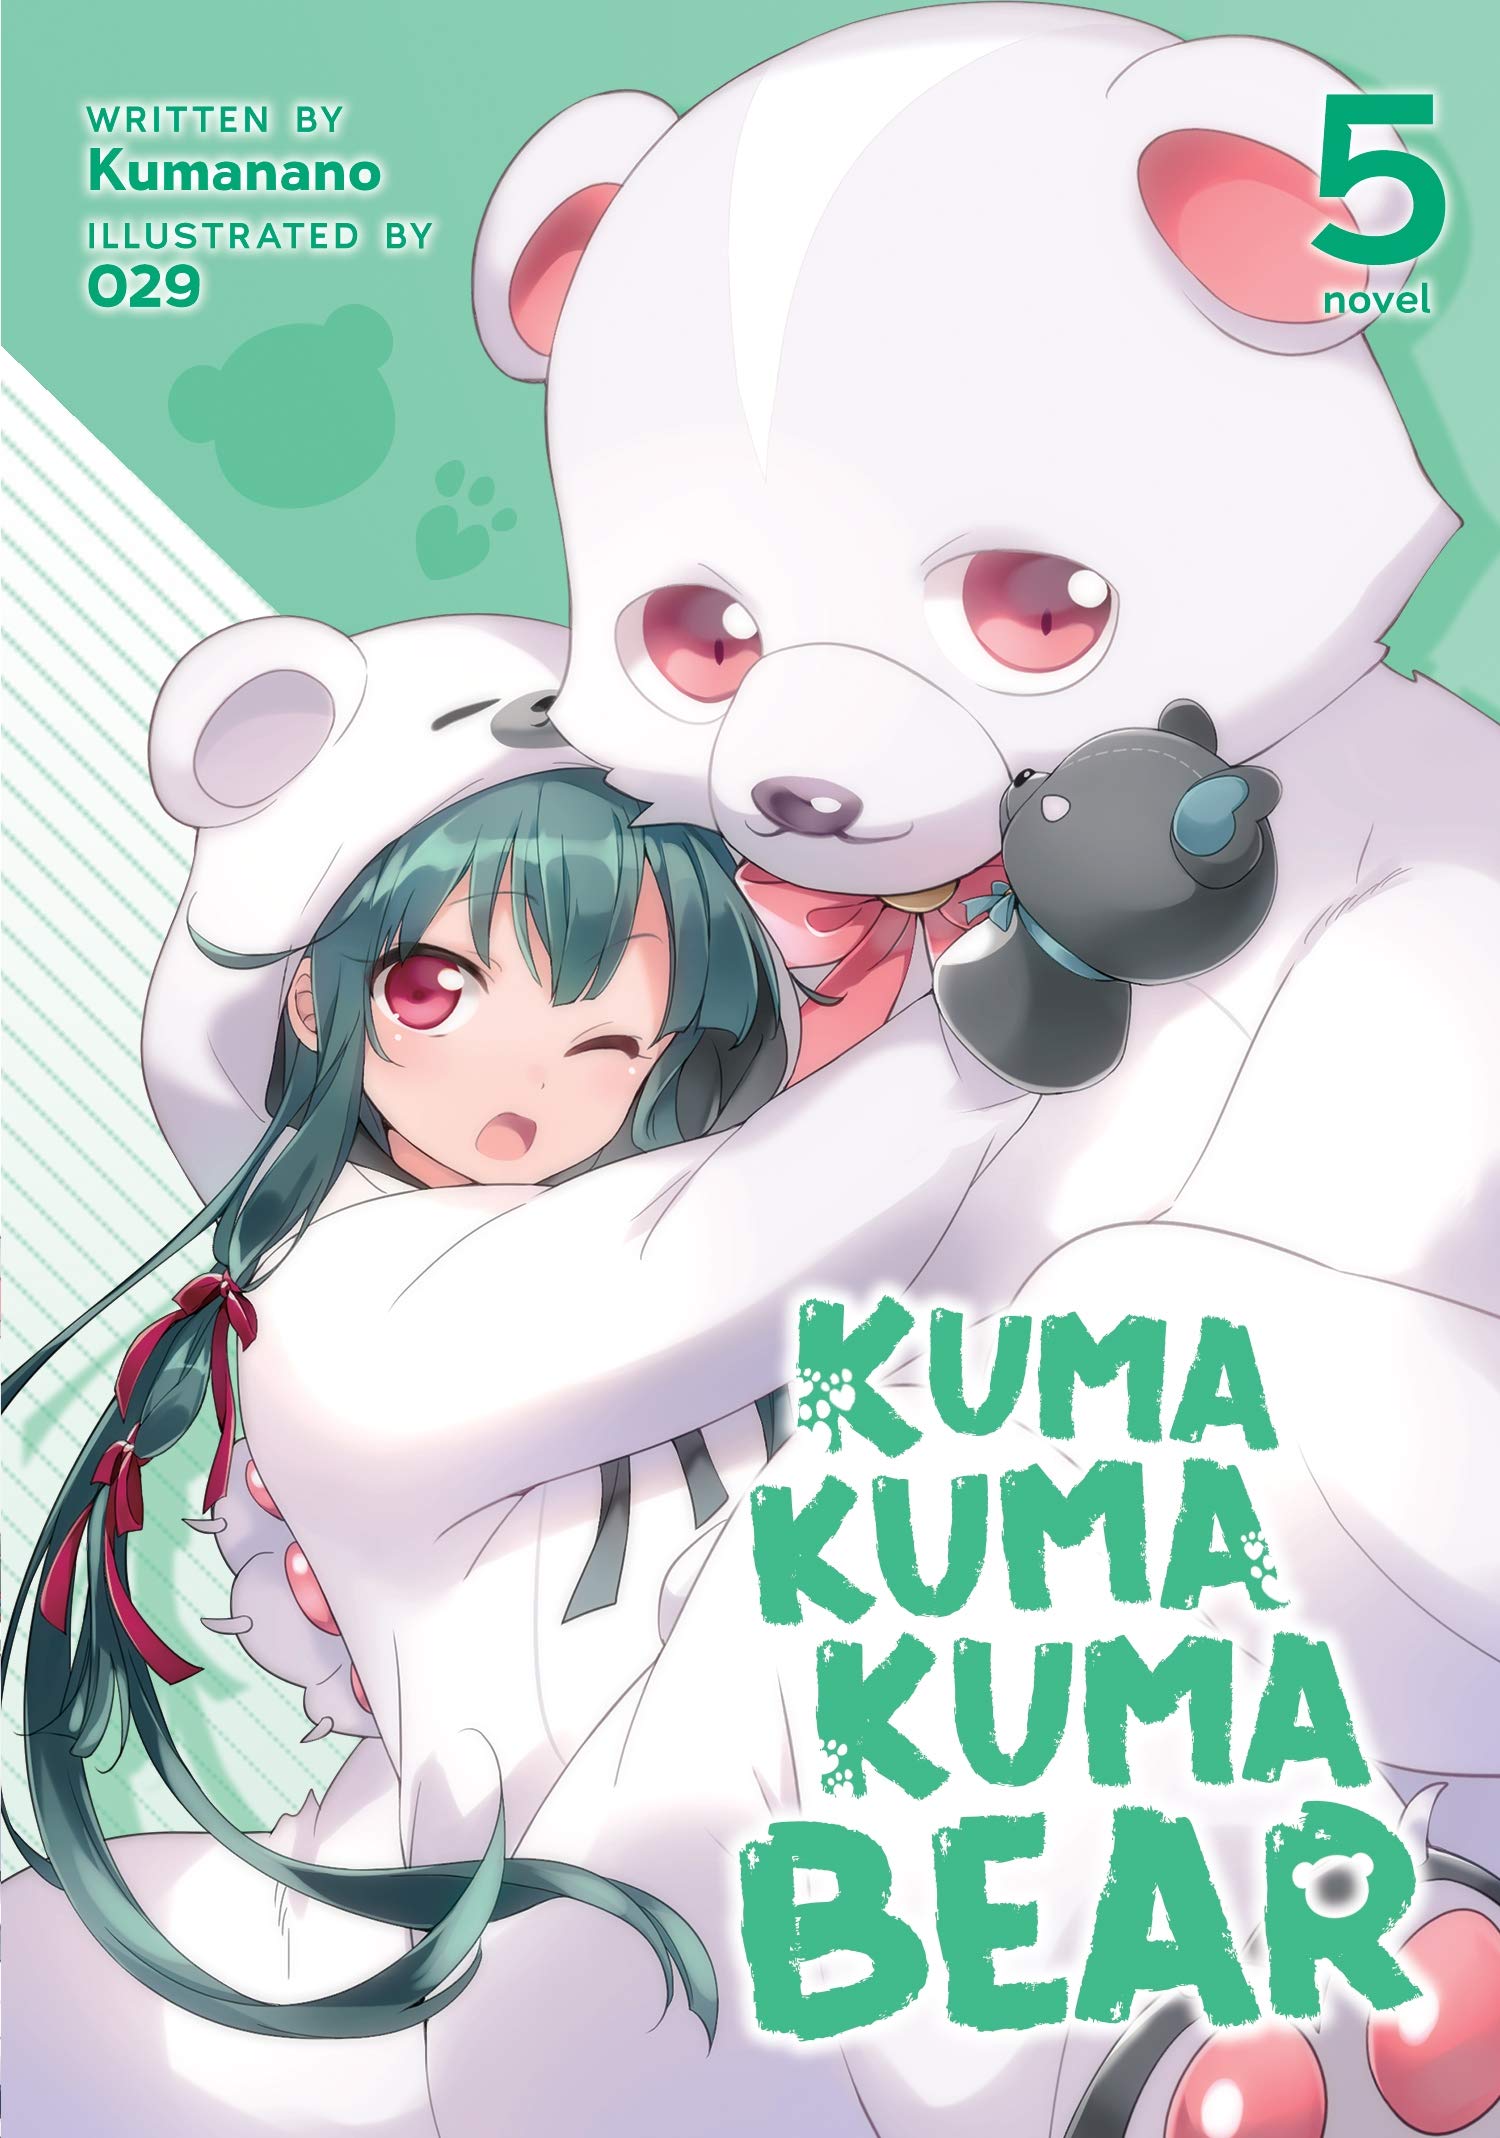 Kuma Kuma Kuma Bear (Light Novel) Vol. 5 (Kuma Kuma Kuma Bear (Light Novel), 5): Kumanano, 029: Books